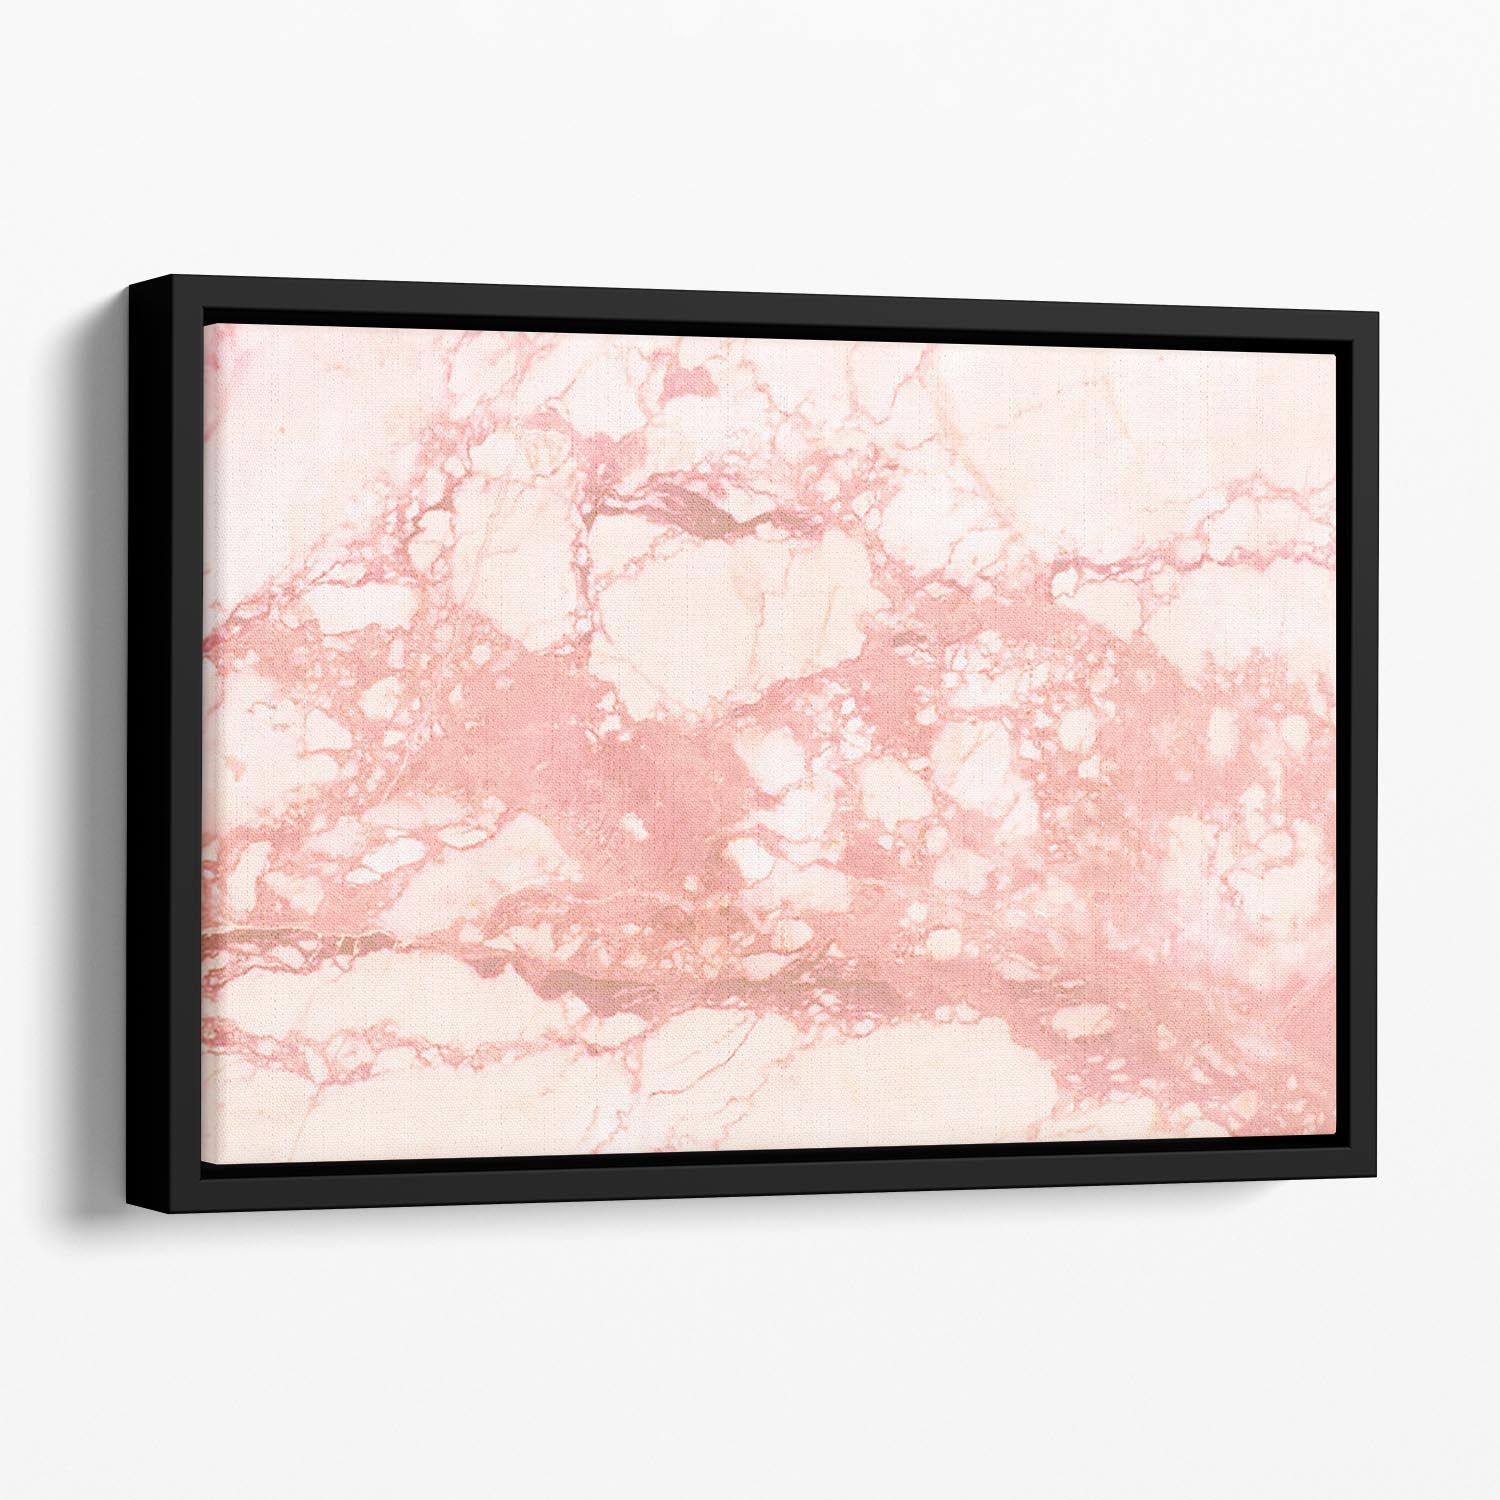 Rose Gold Marble Floating Framed Canvas - Canvas Art Rocks - 1